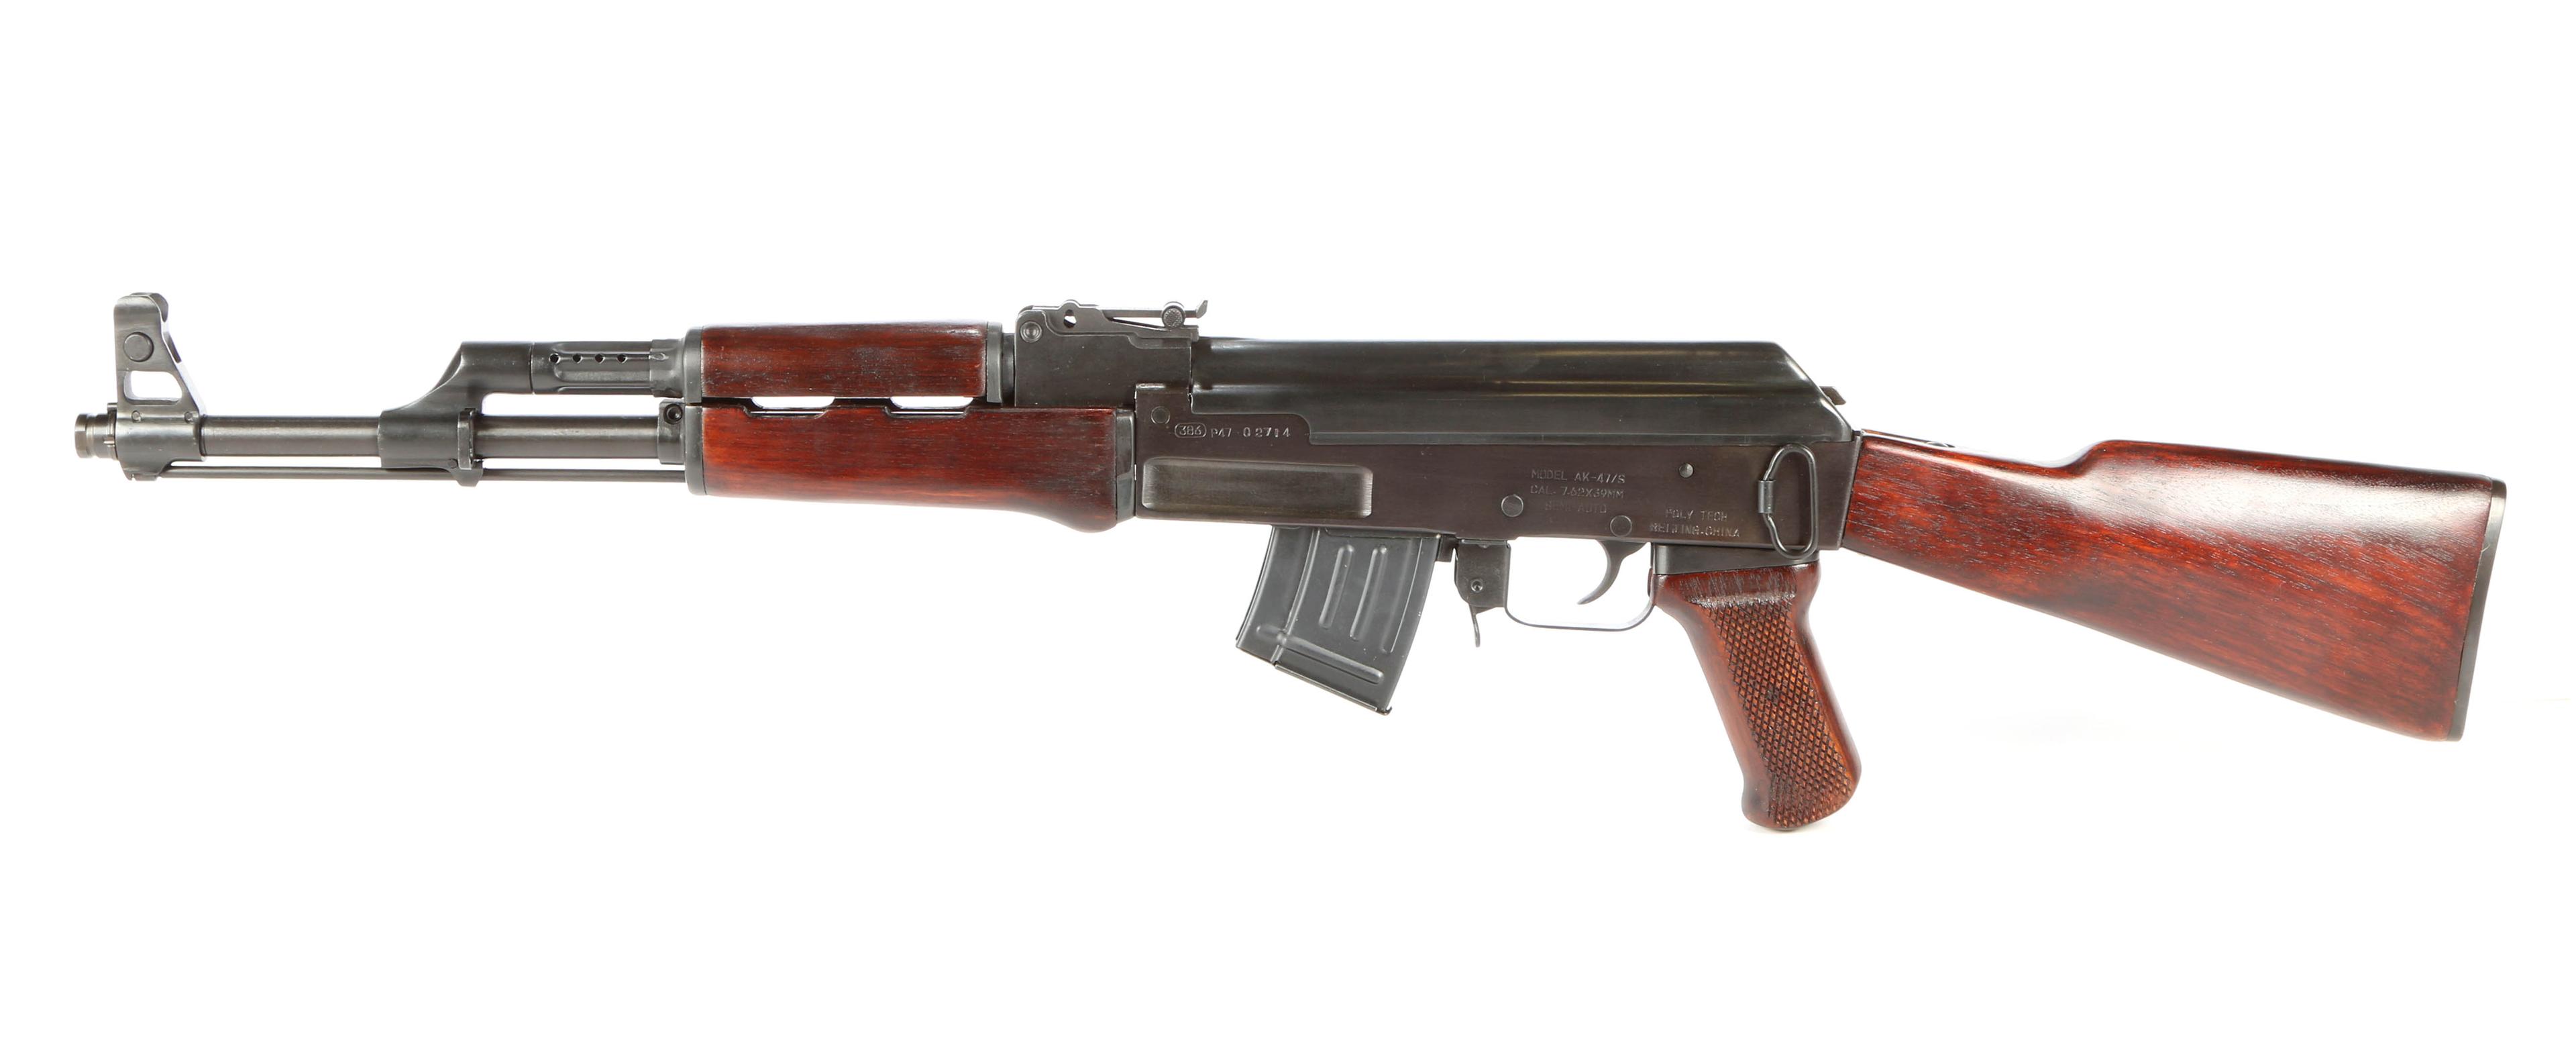 Poly Tech AK-47/S in 7.62x39 Caliber